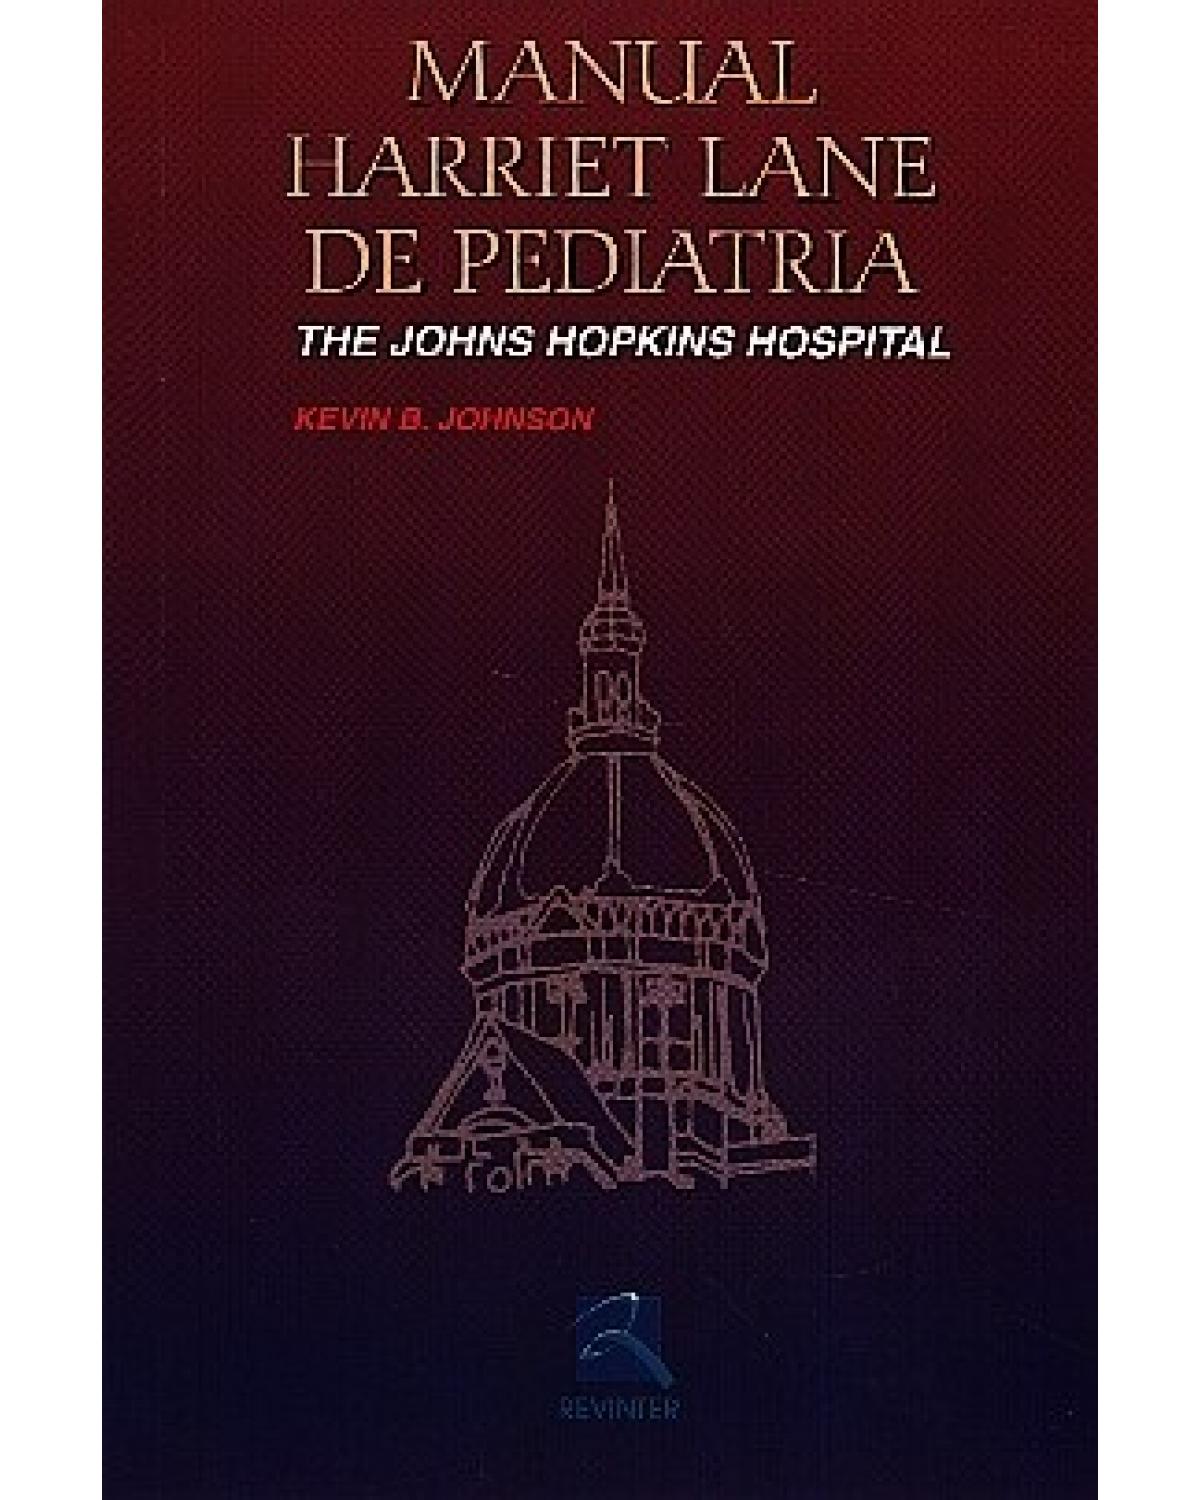 Manual Harriet Lane de pediatria - The Johns Hopkins Hospital - 13ª Edição | 2002